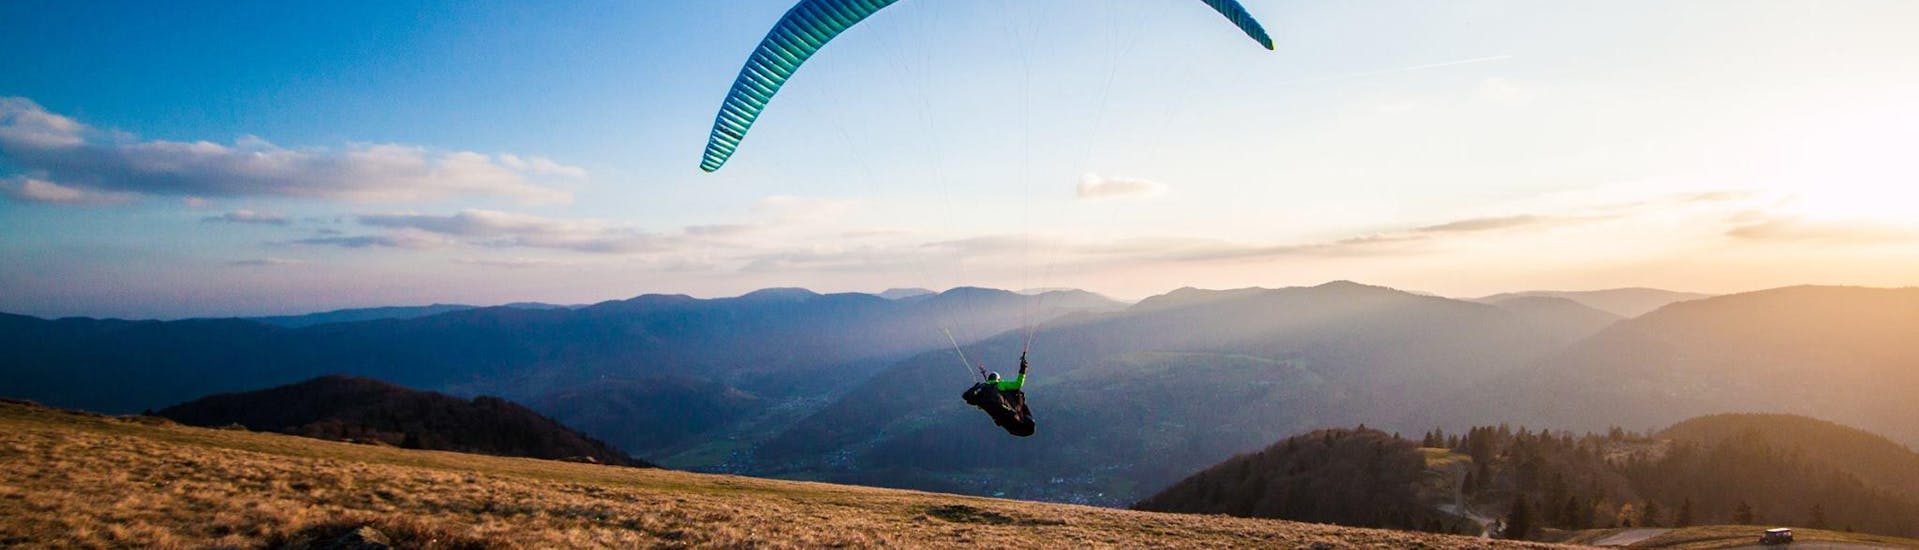 Volo acrobatico in parapendio biposto a Bach - Tiroler Lech Nature Park.